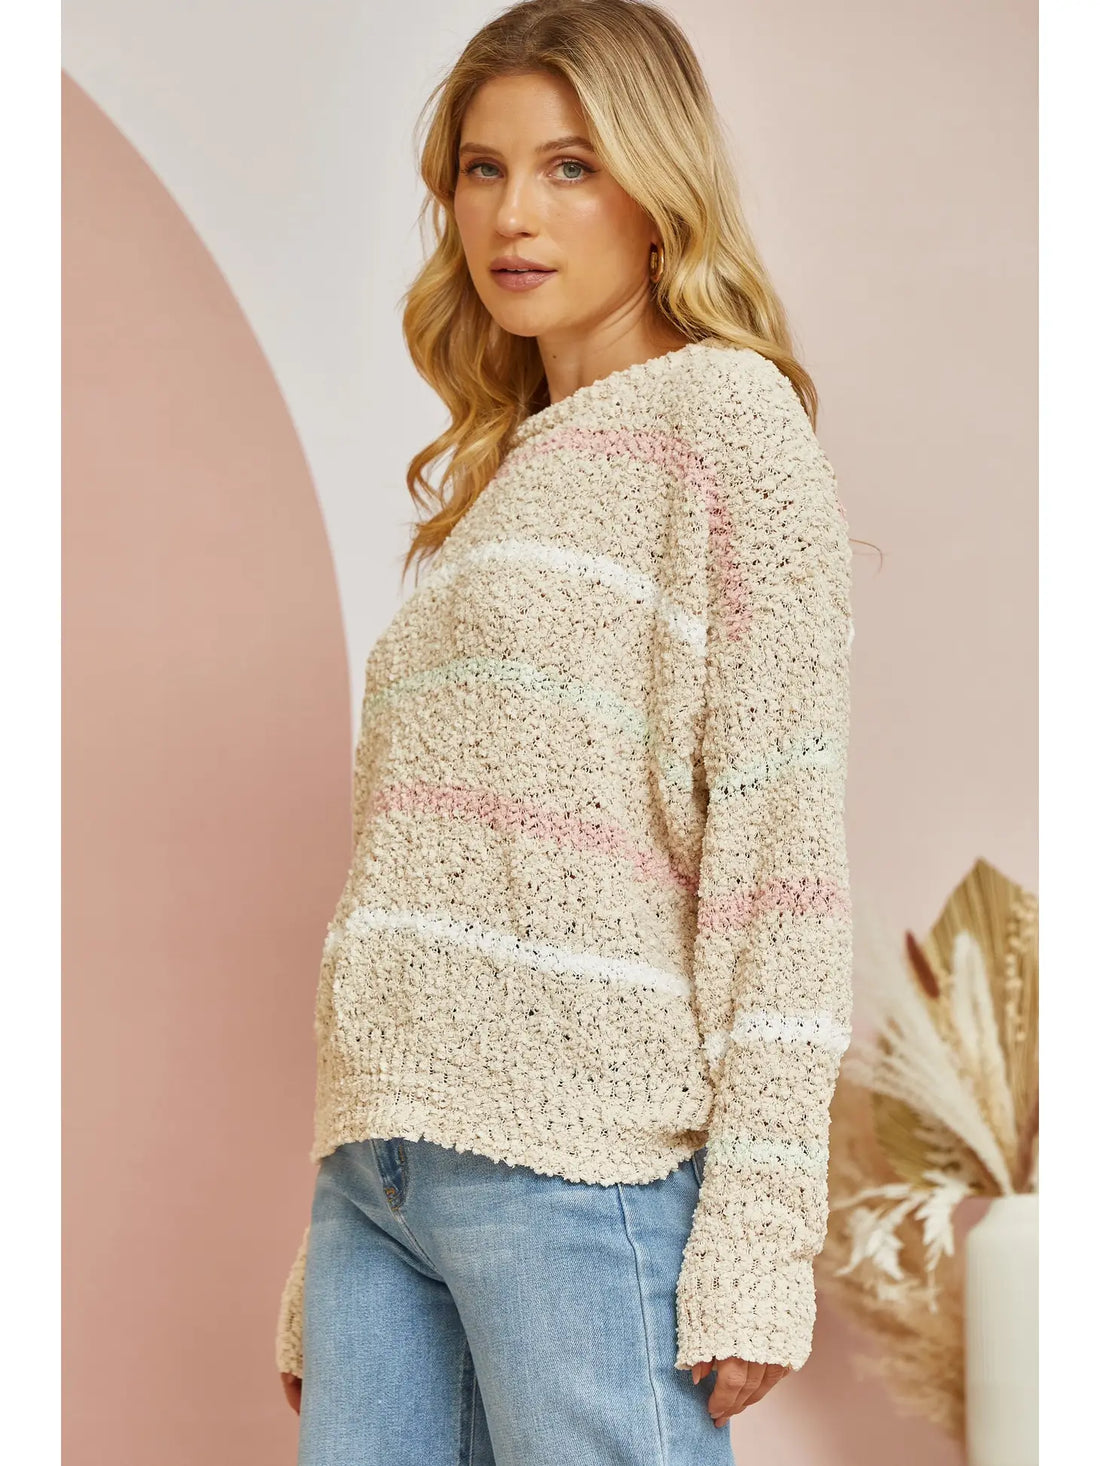 Popcorn Striped Sweater - Beige